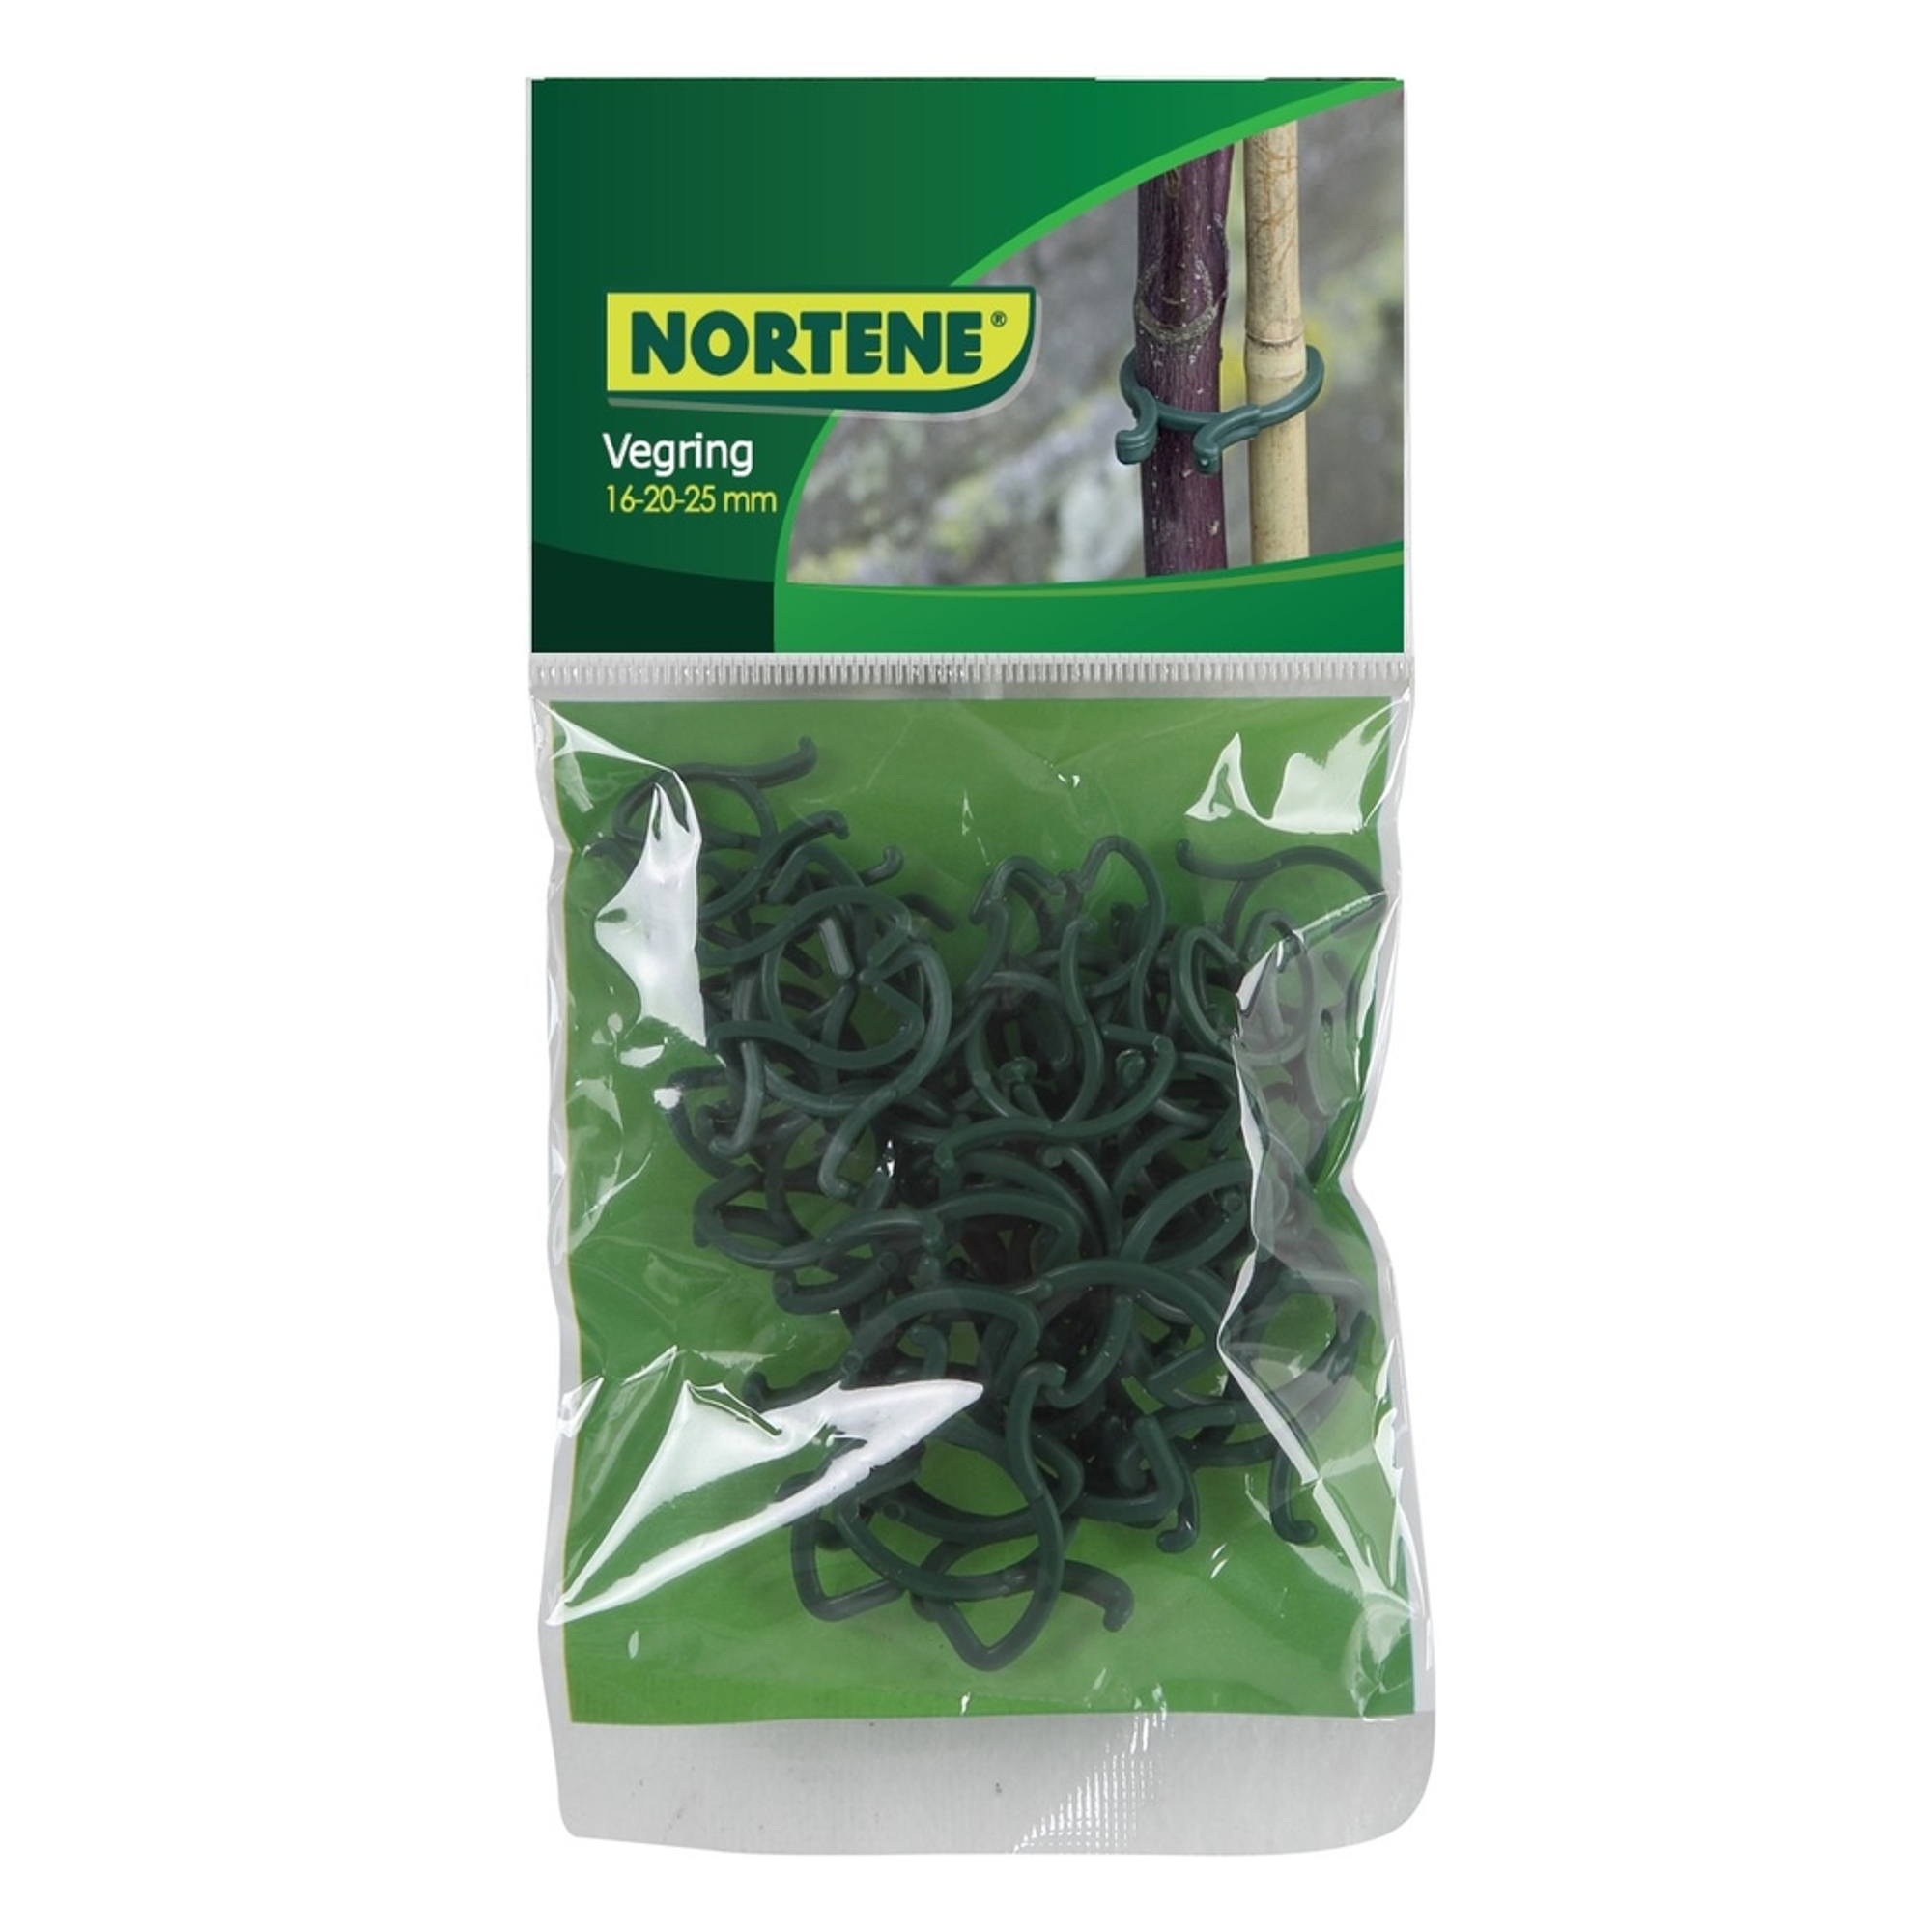 Nortene VEGRING növénykapocs készlet - 40 db / 16,5-20-25 mm -  zöld - 5022804